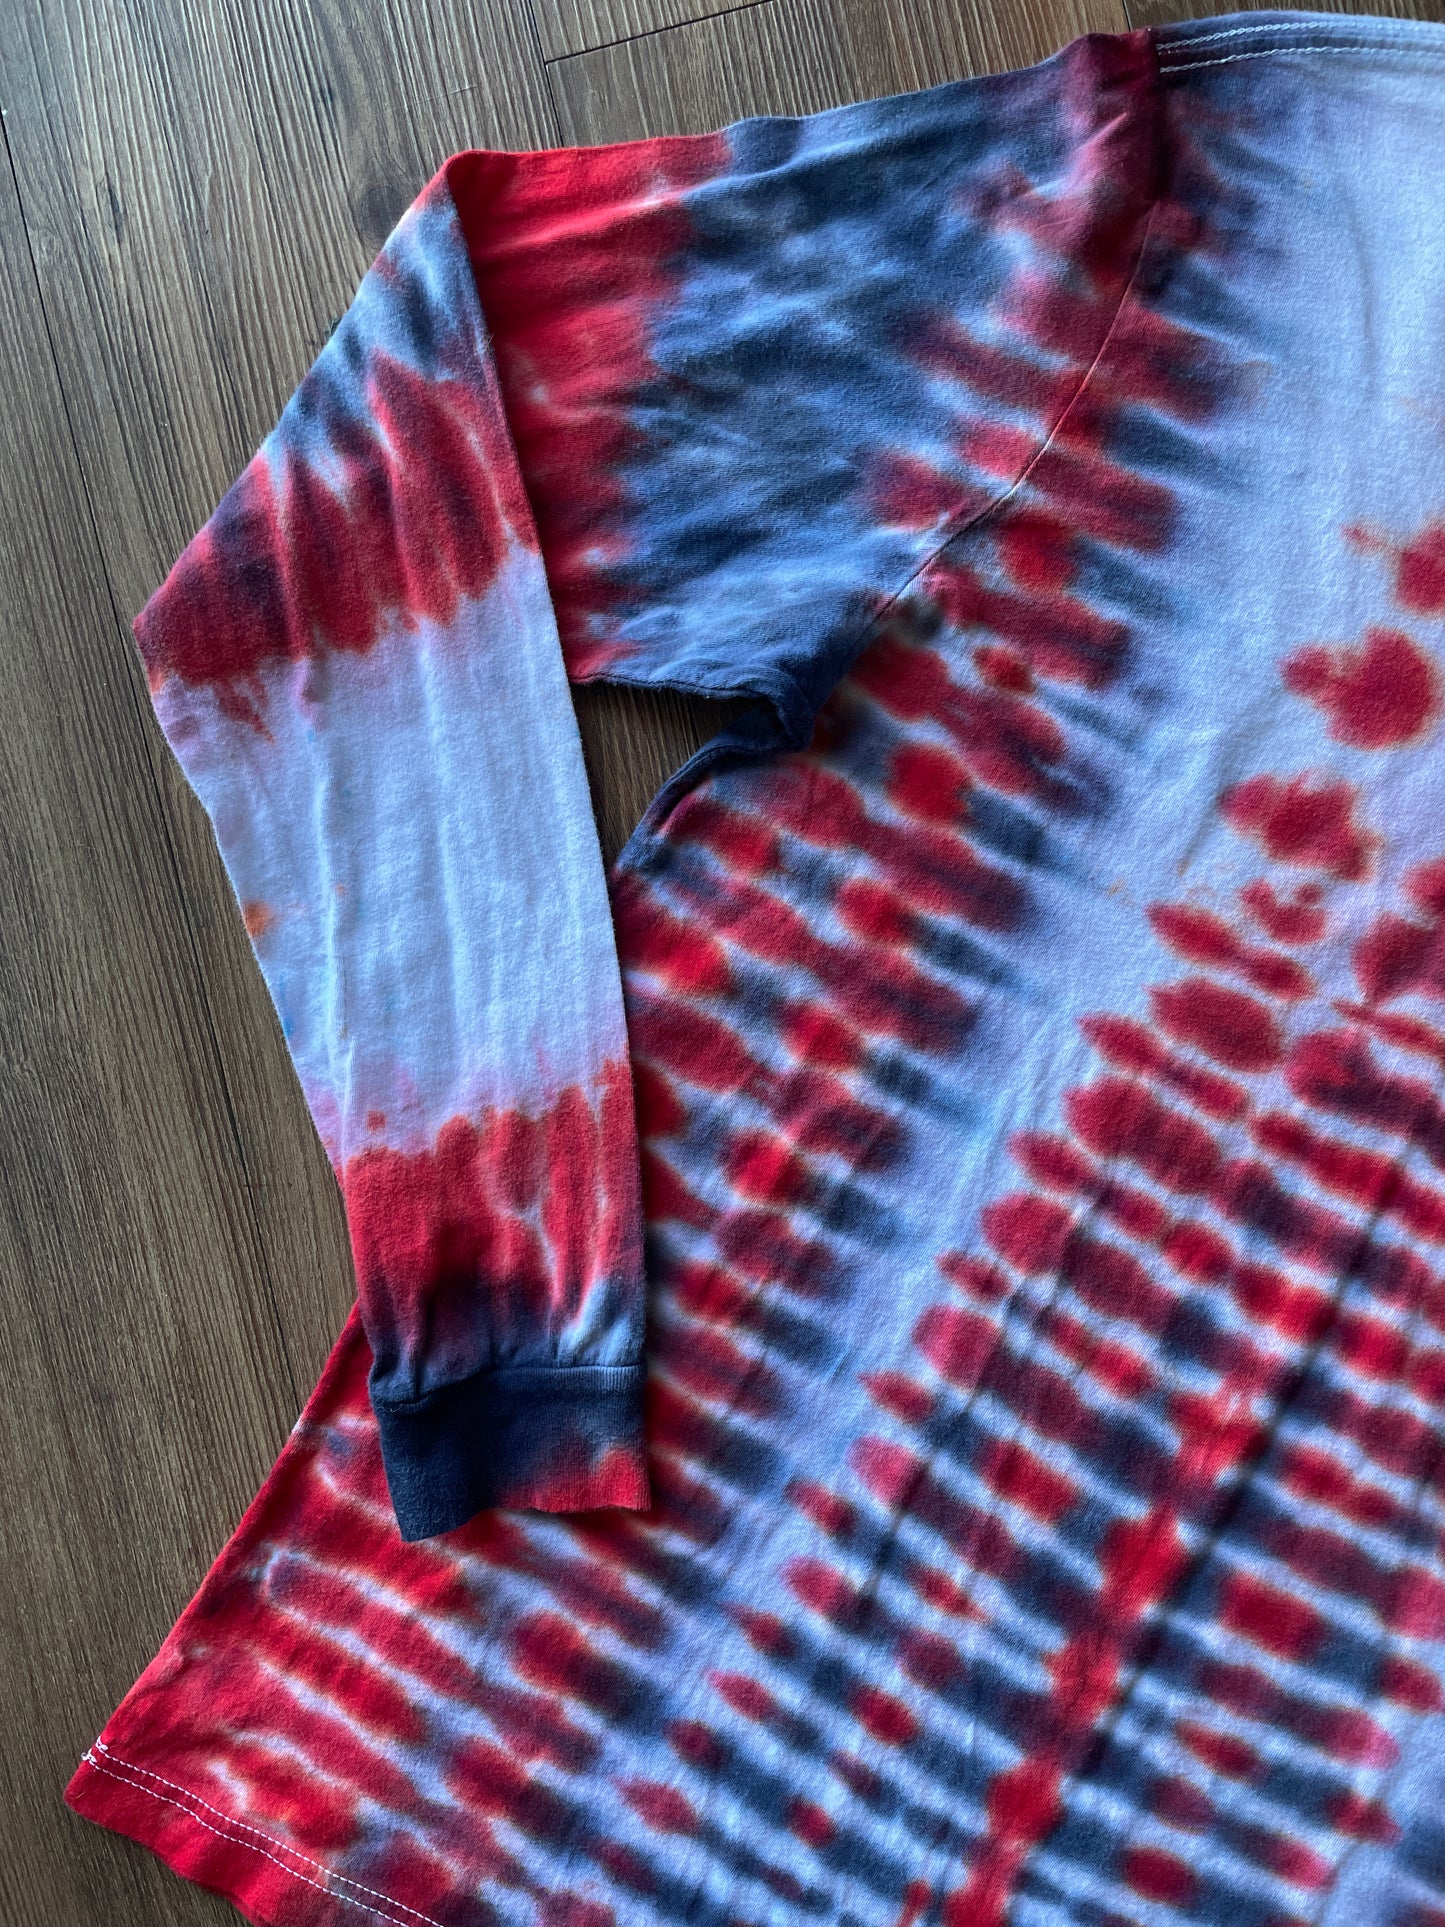 Large Men’s Utah Utes Handmade Tie Dye T-Shirt | Red and Black U of U Pleated Tie Dye Long  Sleeve